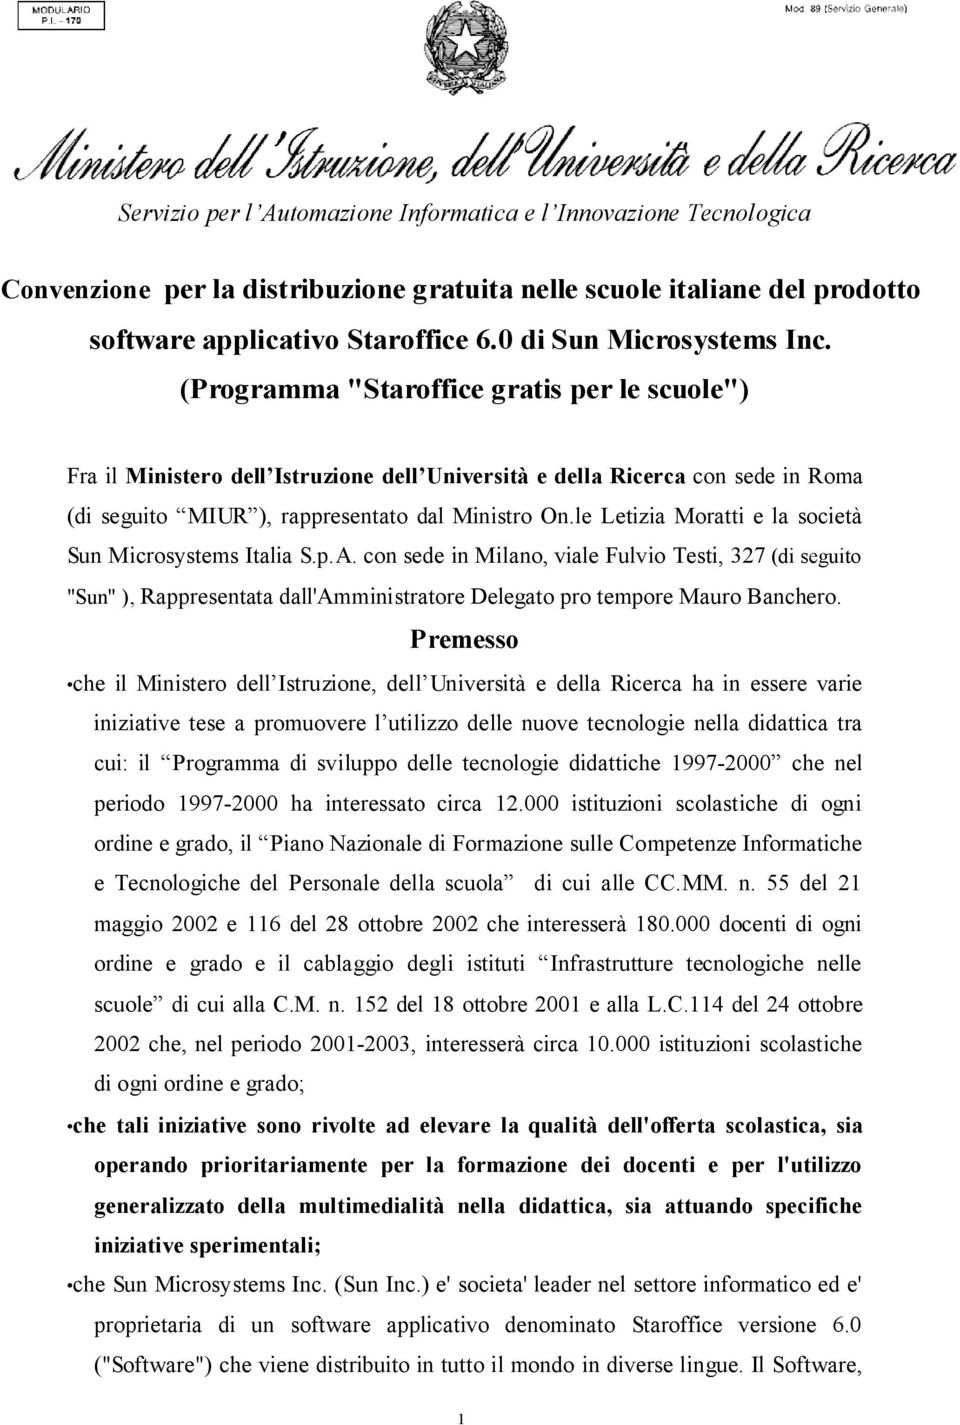 le Letizia Moratti e la società Sun Microsystems Italia S.p.A. con sede in Milano, viale Fulvio Testi, 327 (di seguito "Sun" ), Rappresentata dall'amministratore Delegato pro tempore Mauro Banchero.